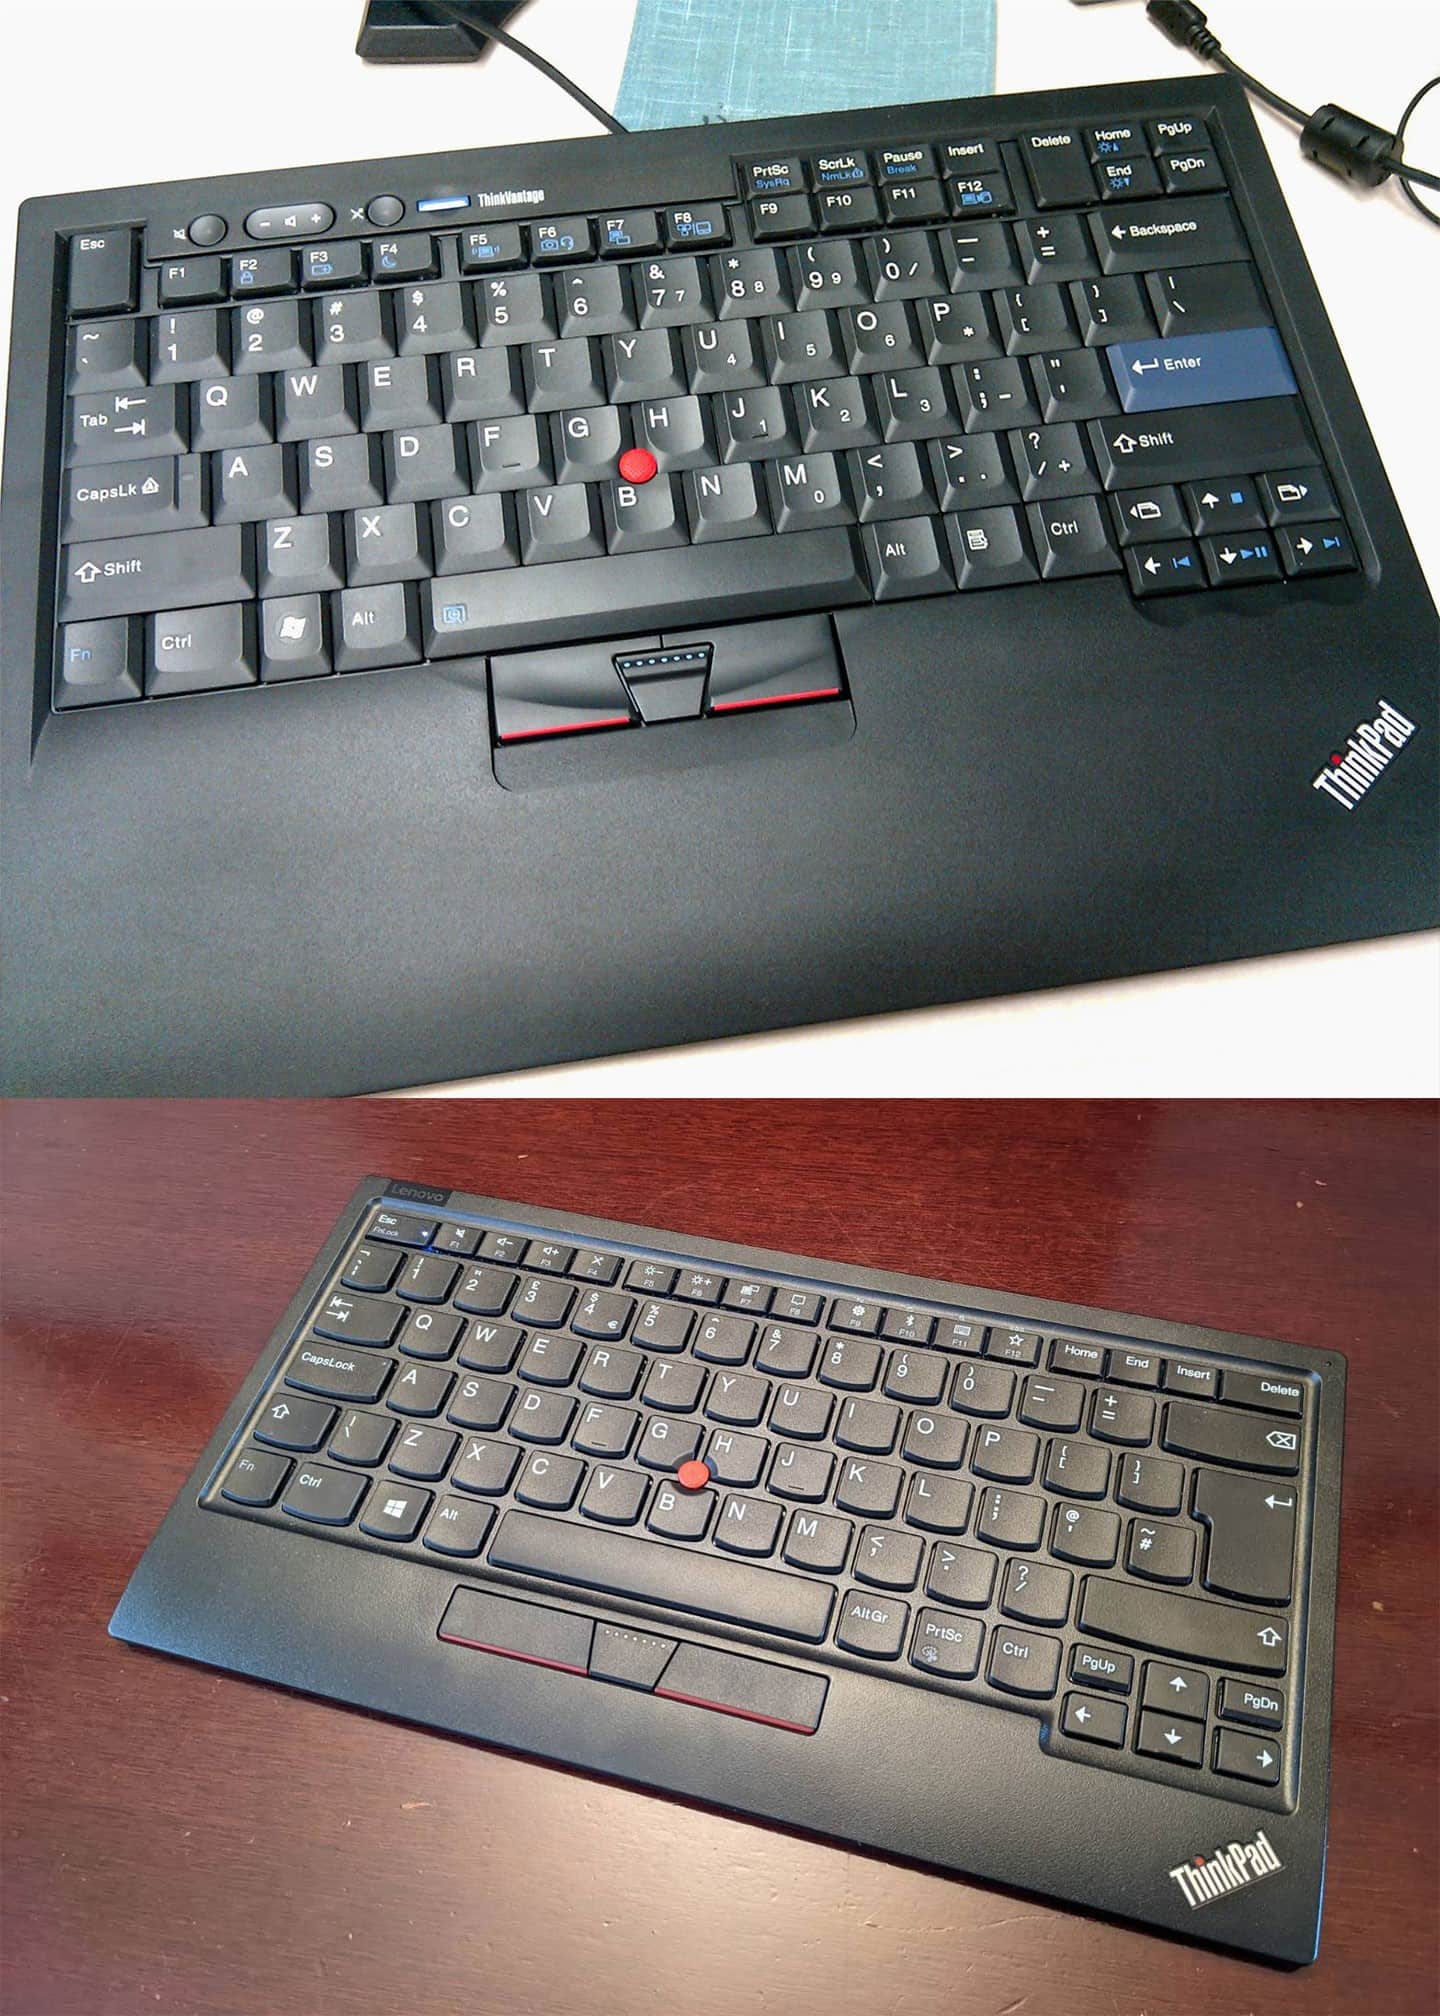 ThinkPad 過往經典的 7 列鍵盤（圖上）與現行的 6 列鍵盤（圖下）。